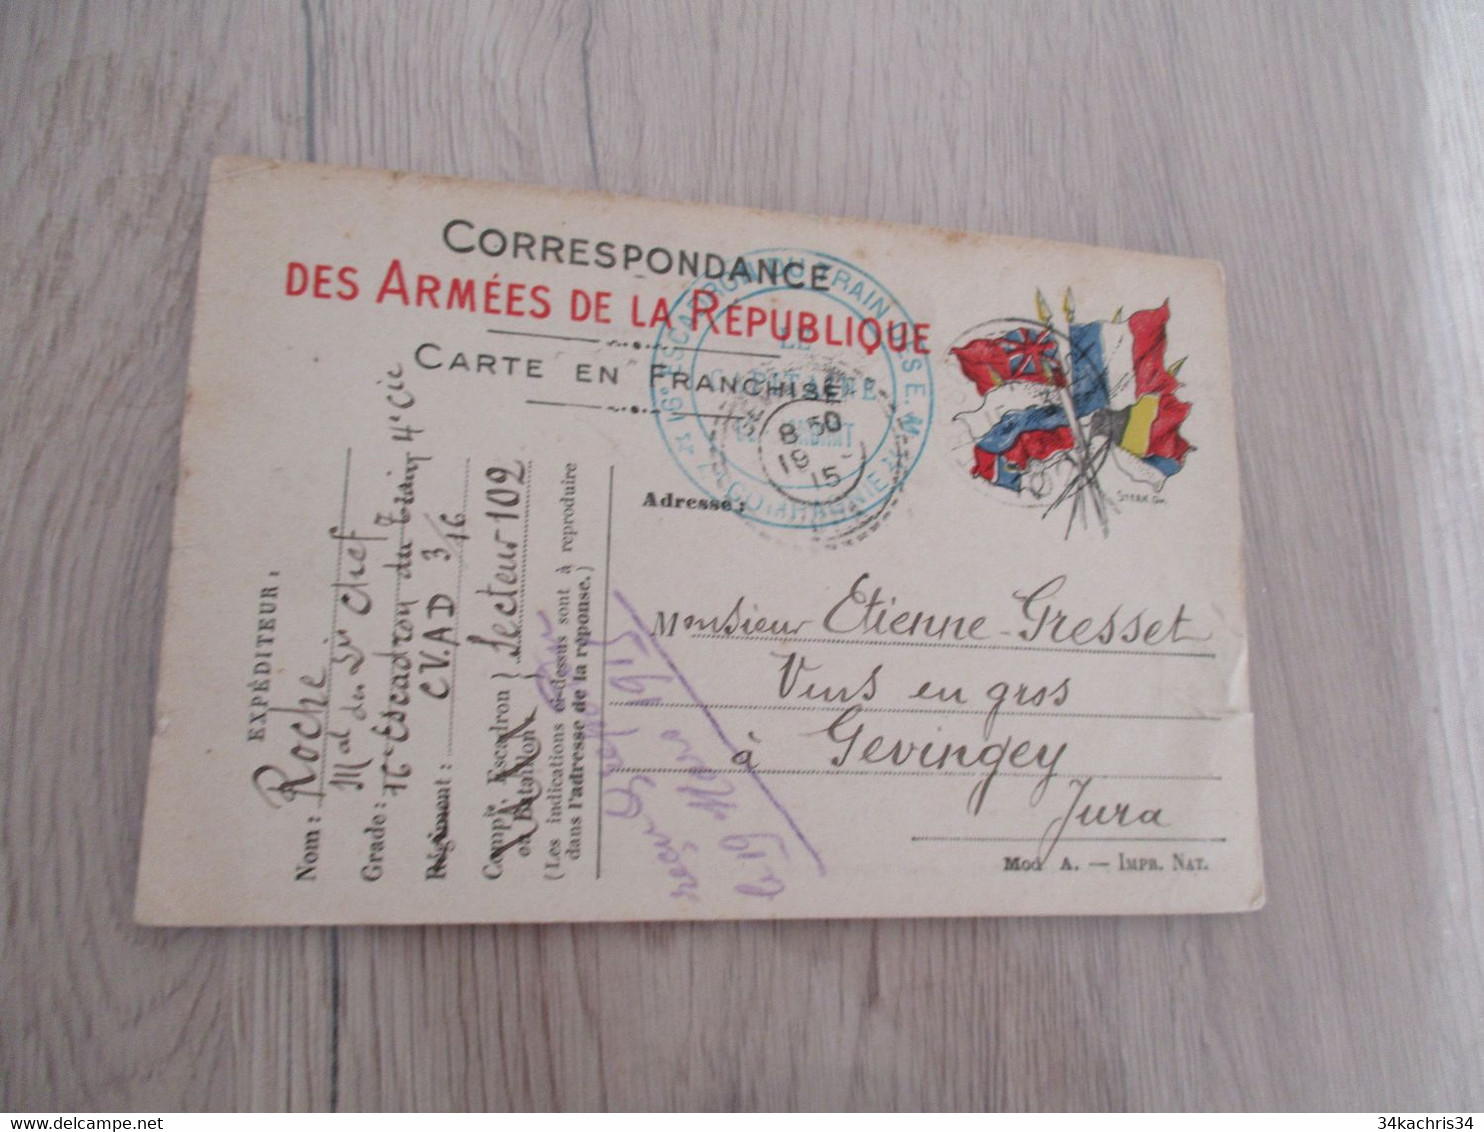 CPFM Carte Postale Franchise Militaire Guerre 14/18 1915 16 ème Escadron Du Train Secteur 102 - Briefe U. Dokumente